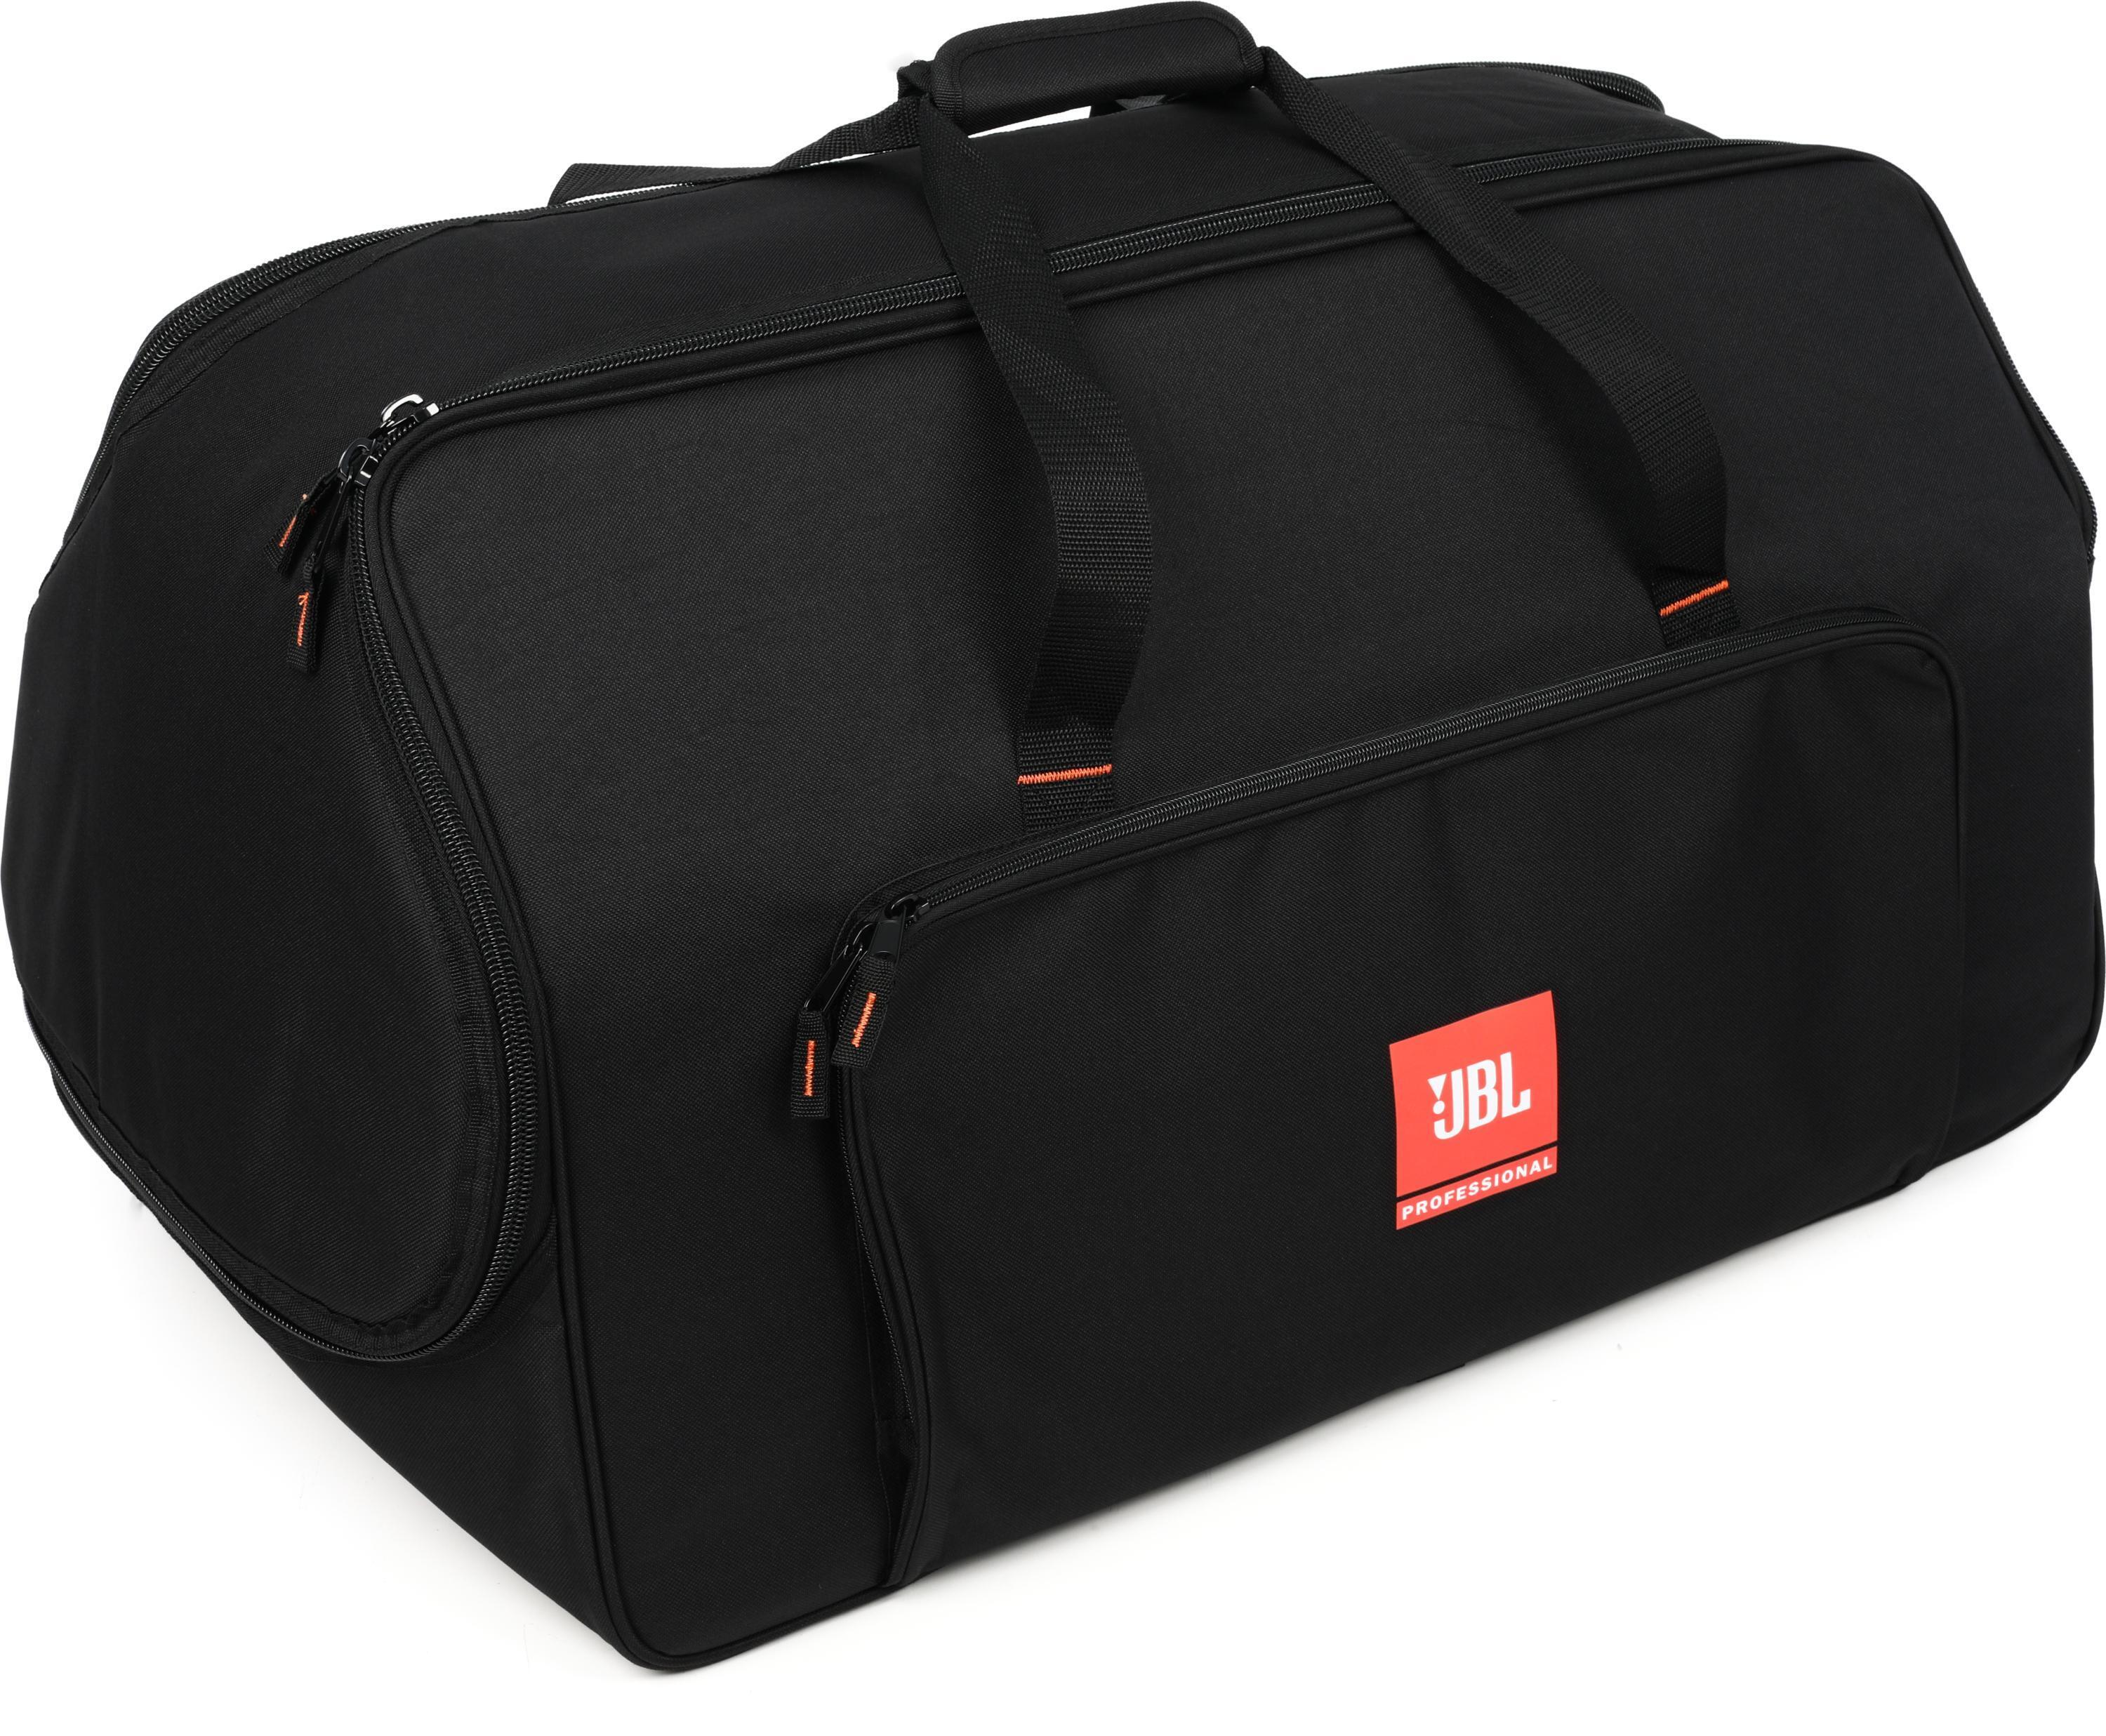 Bundled Item: JBL Bags EON715-BAG Tote Bag for EON715 Speaker